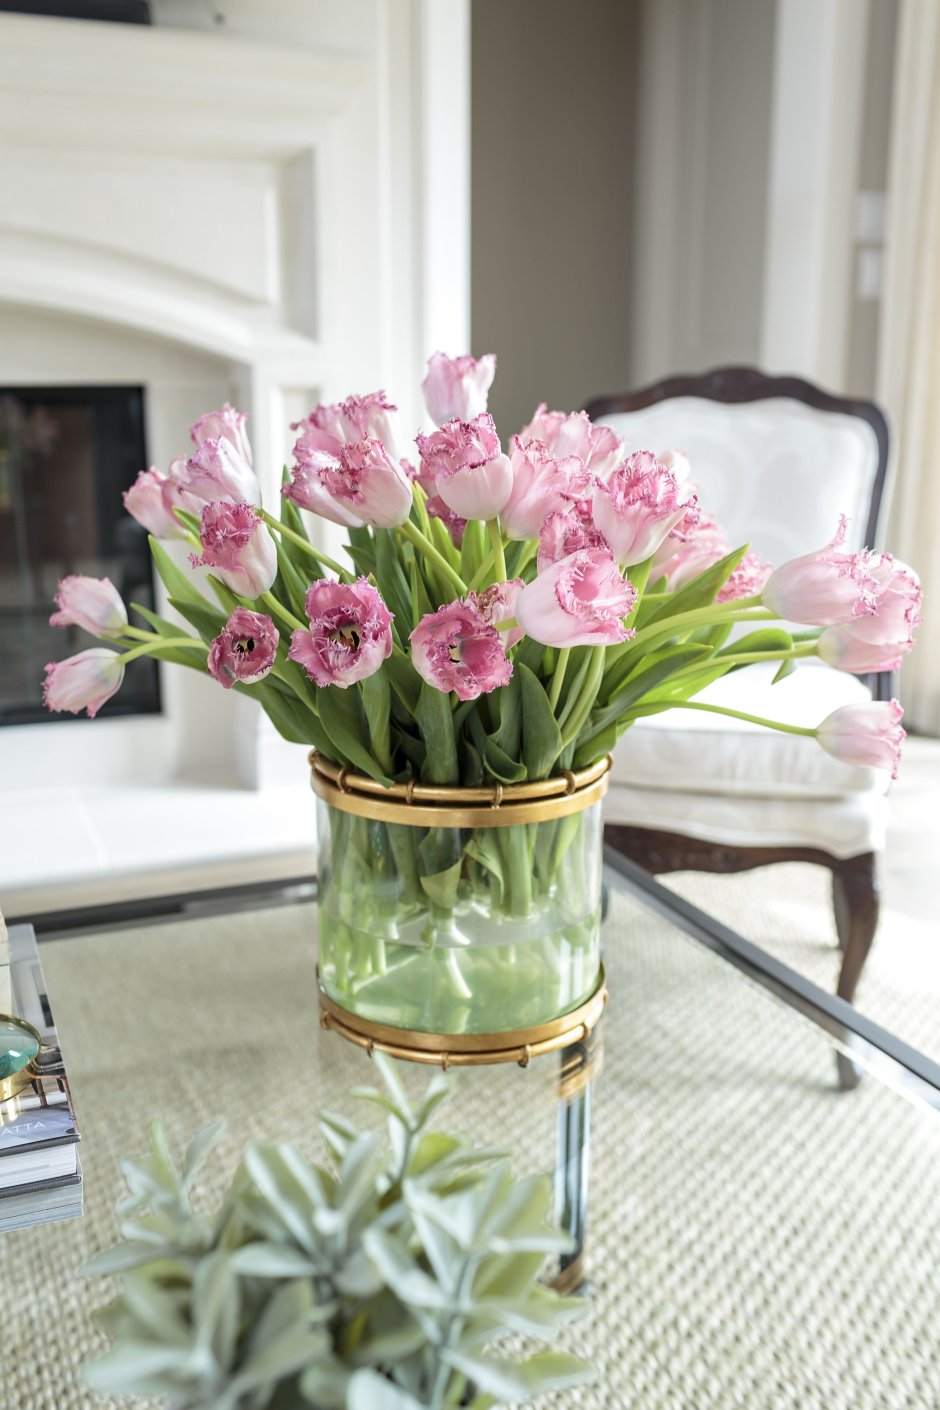 Тюльпаны в прозрачной вазе